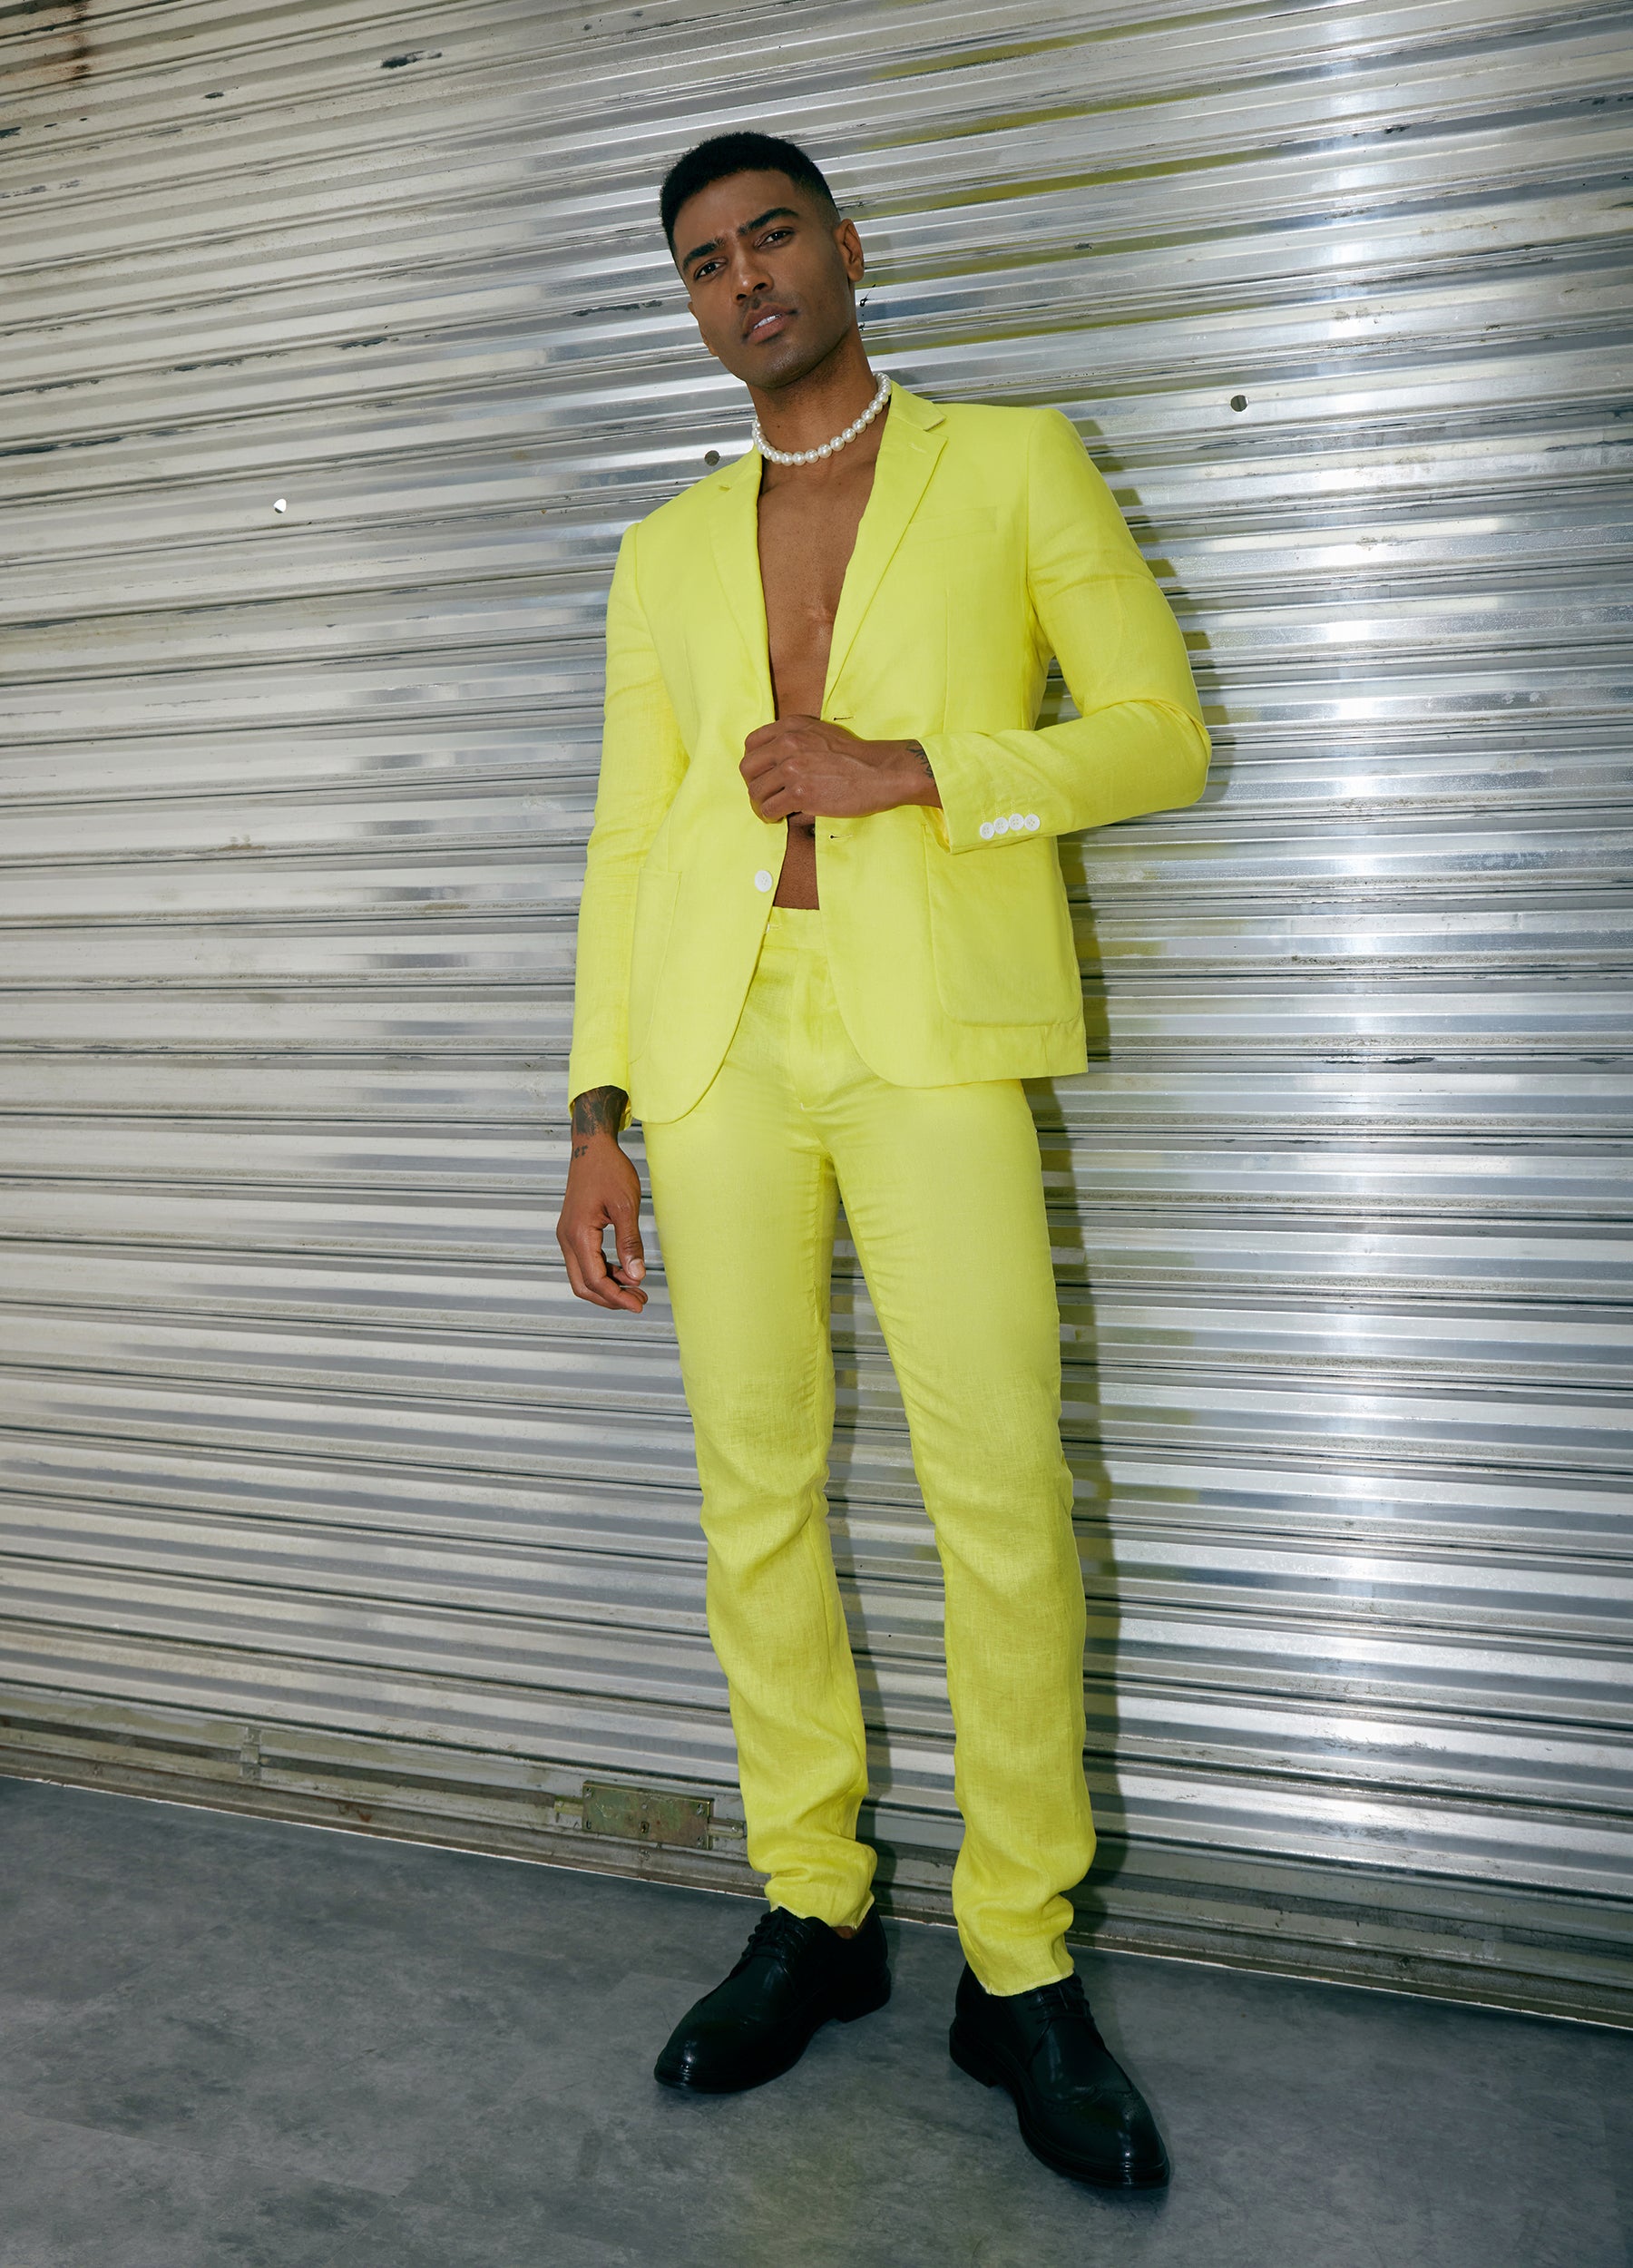 1PA1 Men's 100% Linen Yellow Jacket Trousers 2-Pieces Suit Set